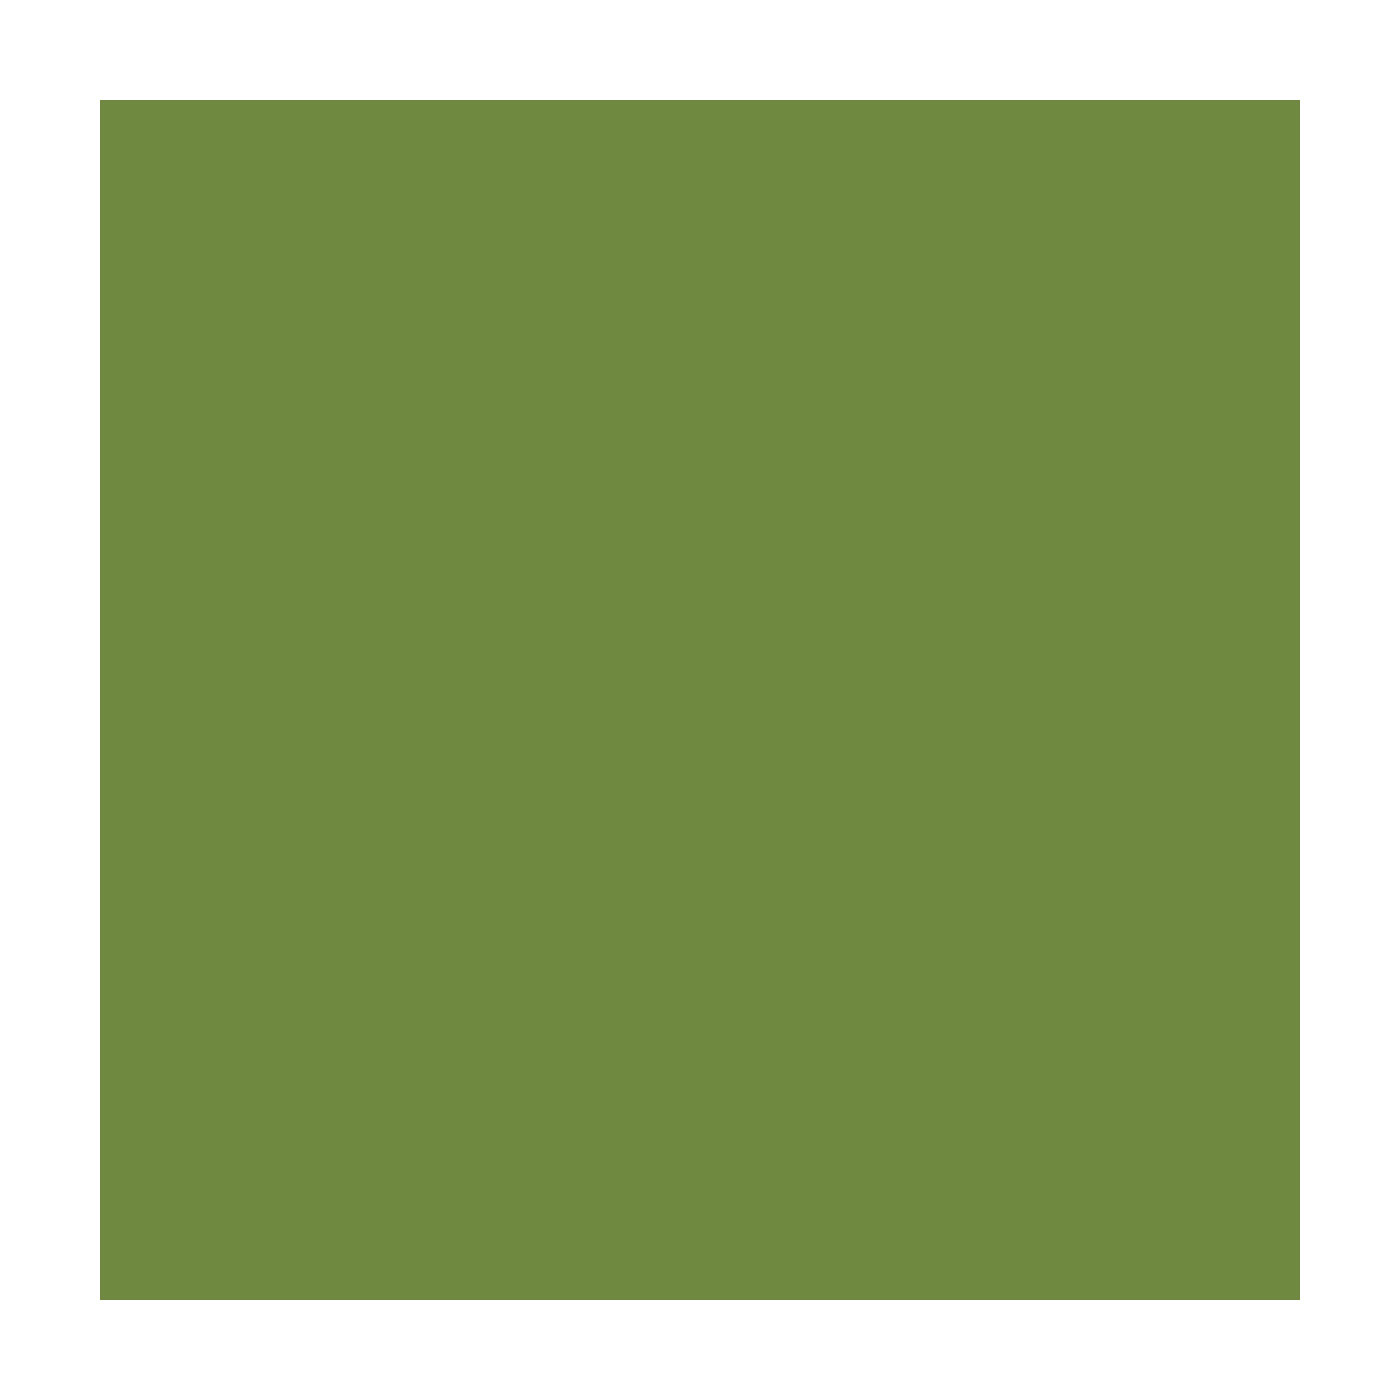 Duni Zelltuchservietten 33 x 33 cm 3-lagig 1/4 Falz leaf green